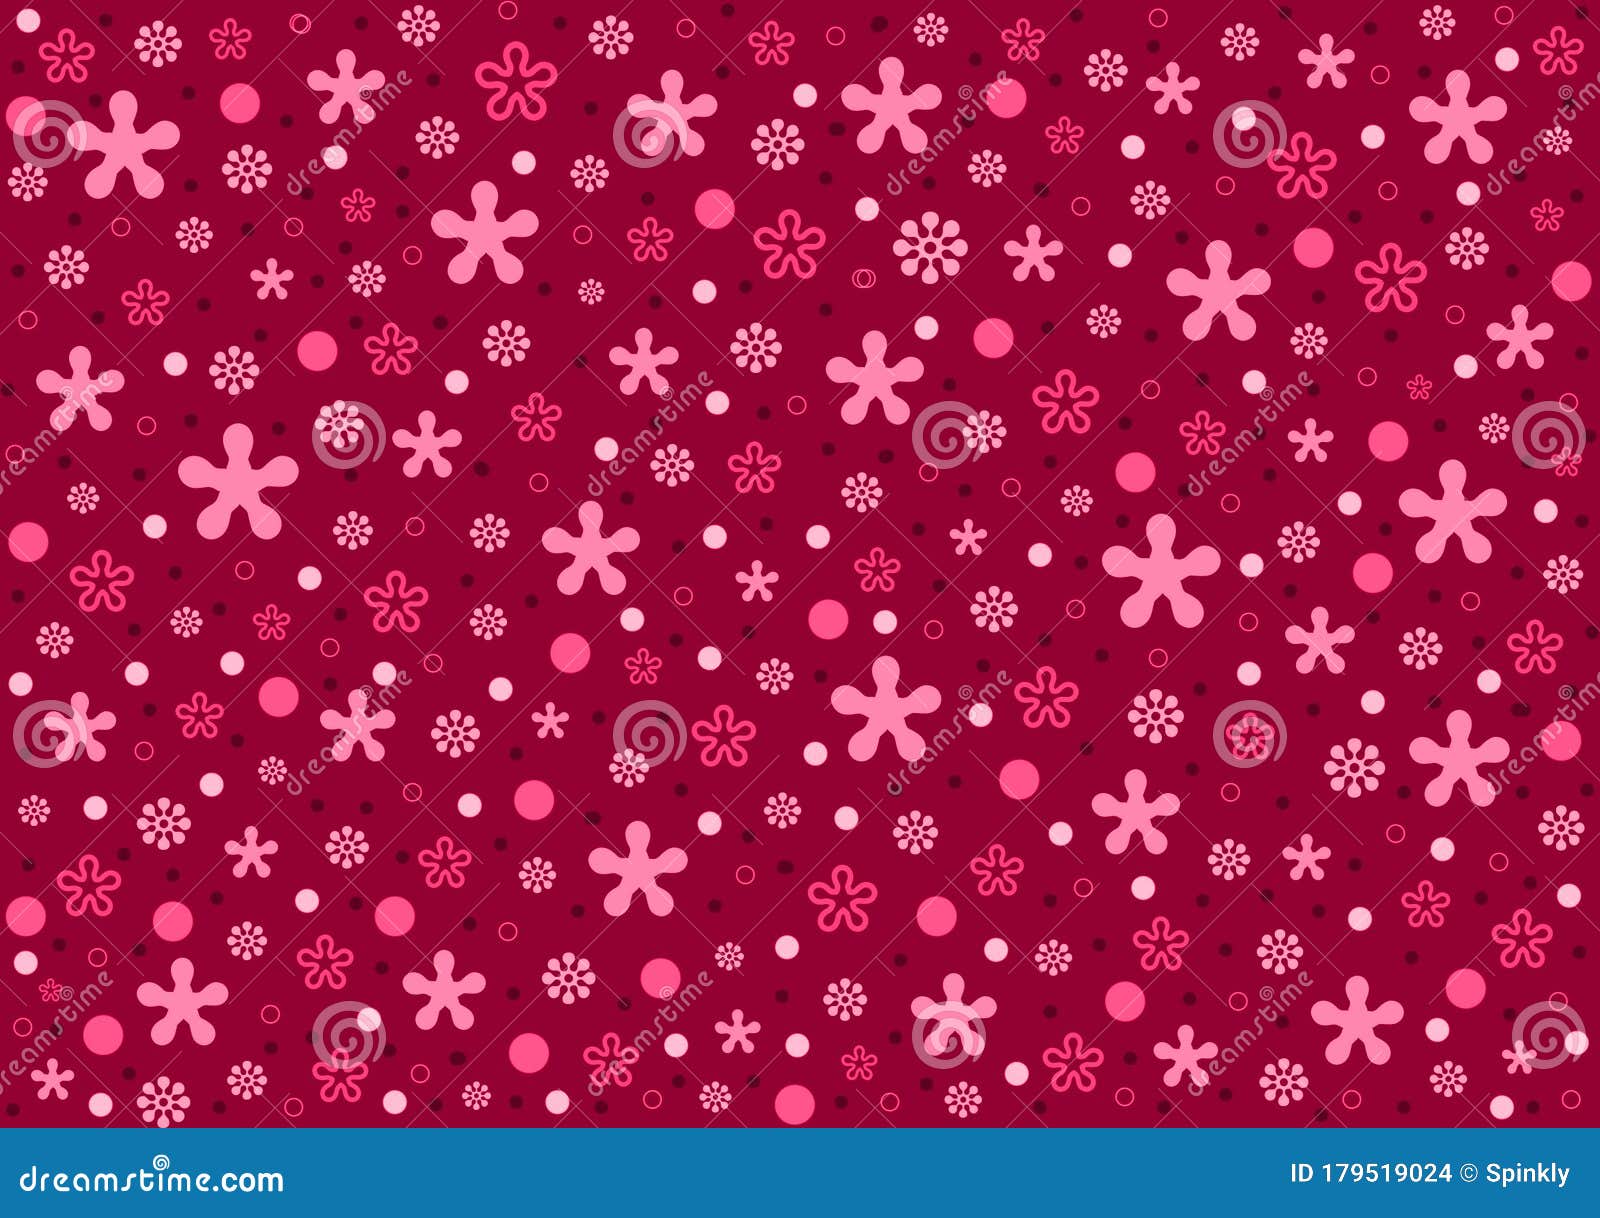 iPhoneXpapers - sg12-blue-pink-color-gradation-blur